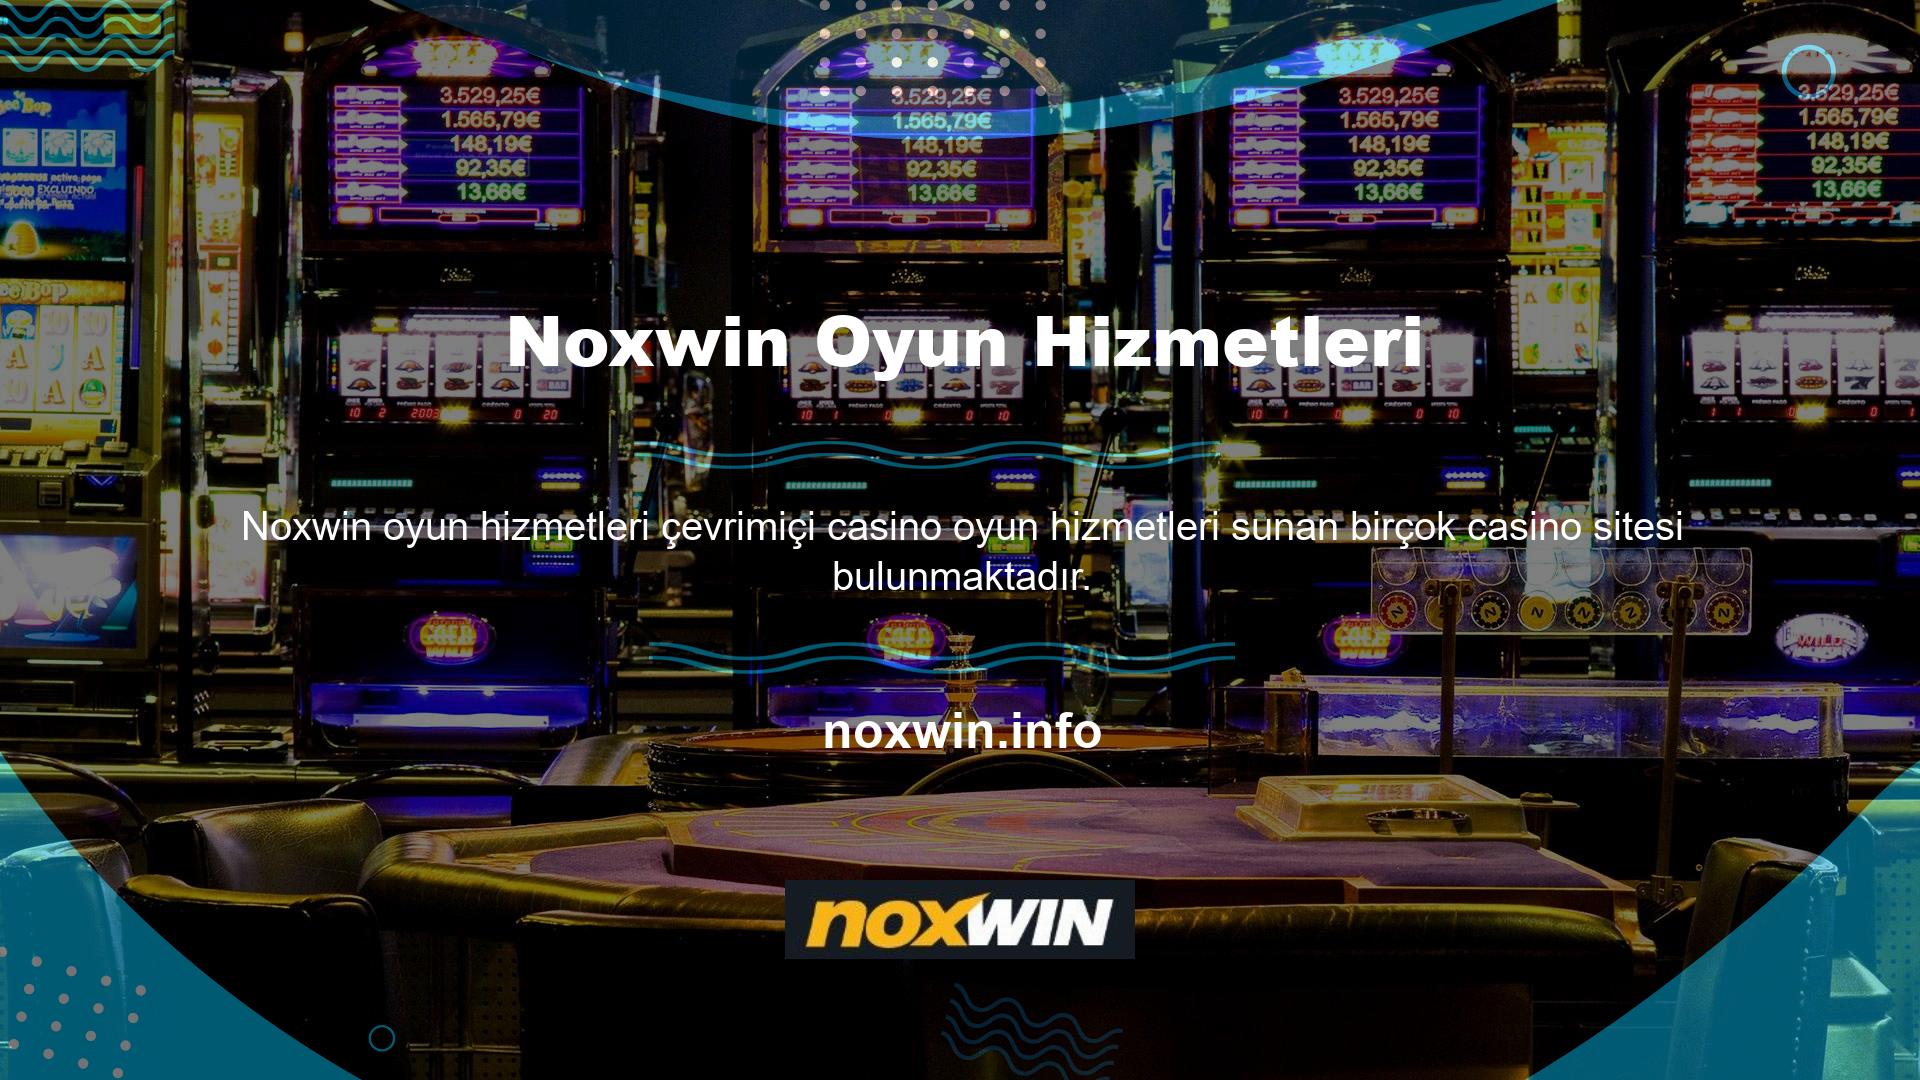 Noxwin casino sitesi hem casino hem de casino oyunlarında adından söz ettirmeyi başarmıştır